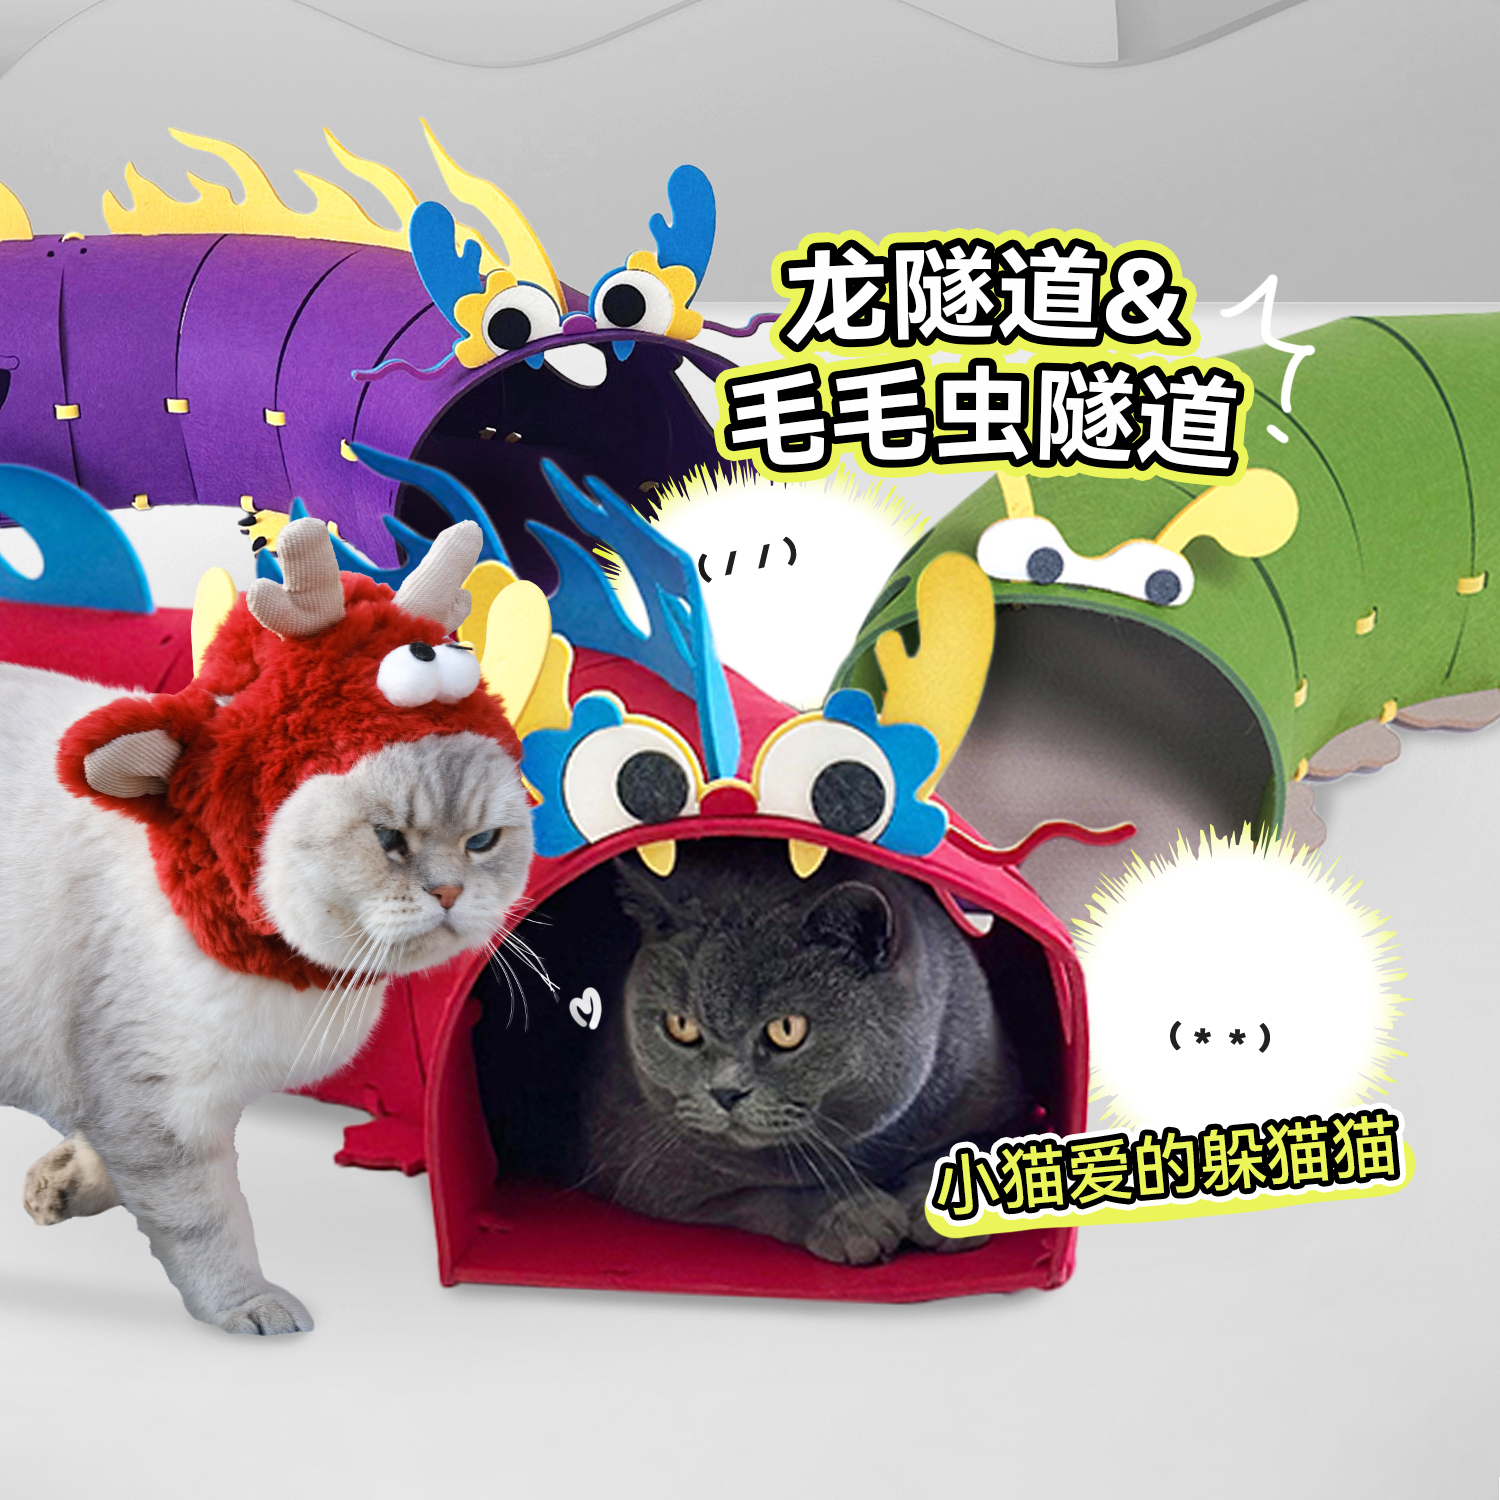 白猪商店 Ambition 小野芯 猫隧道躲猫猫 猫玩具逗猫猫窝新年礼包